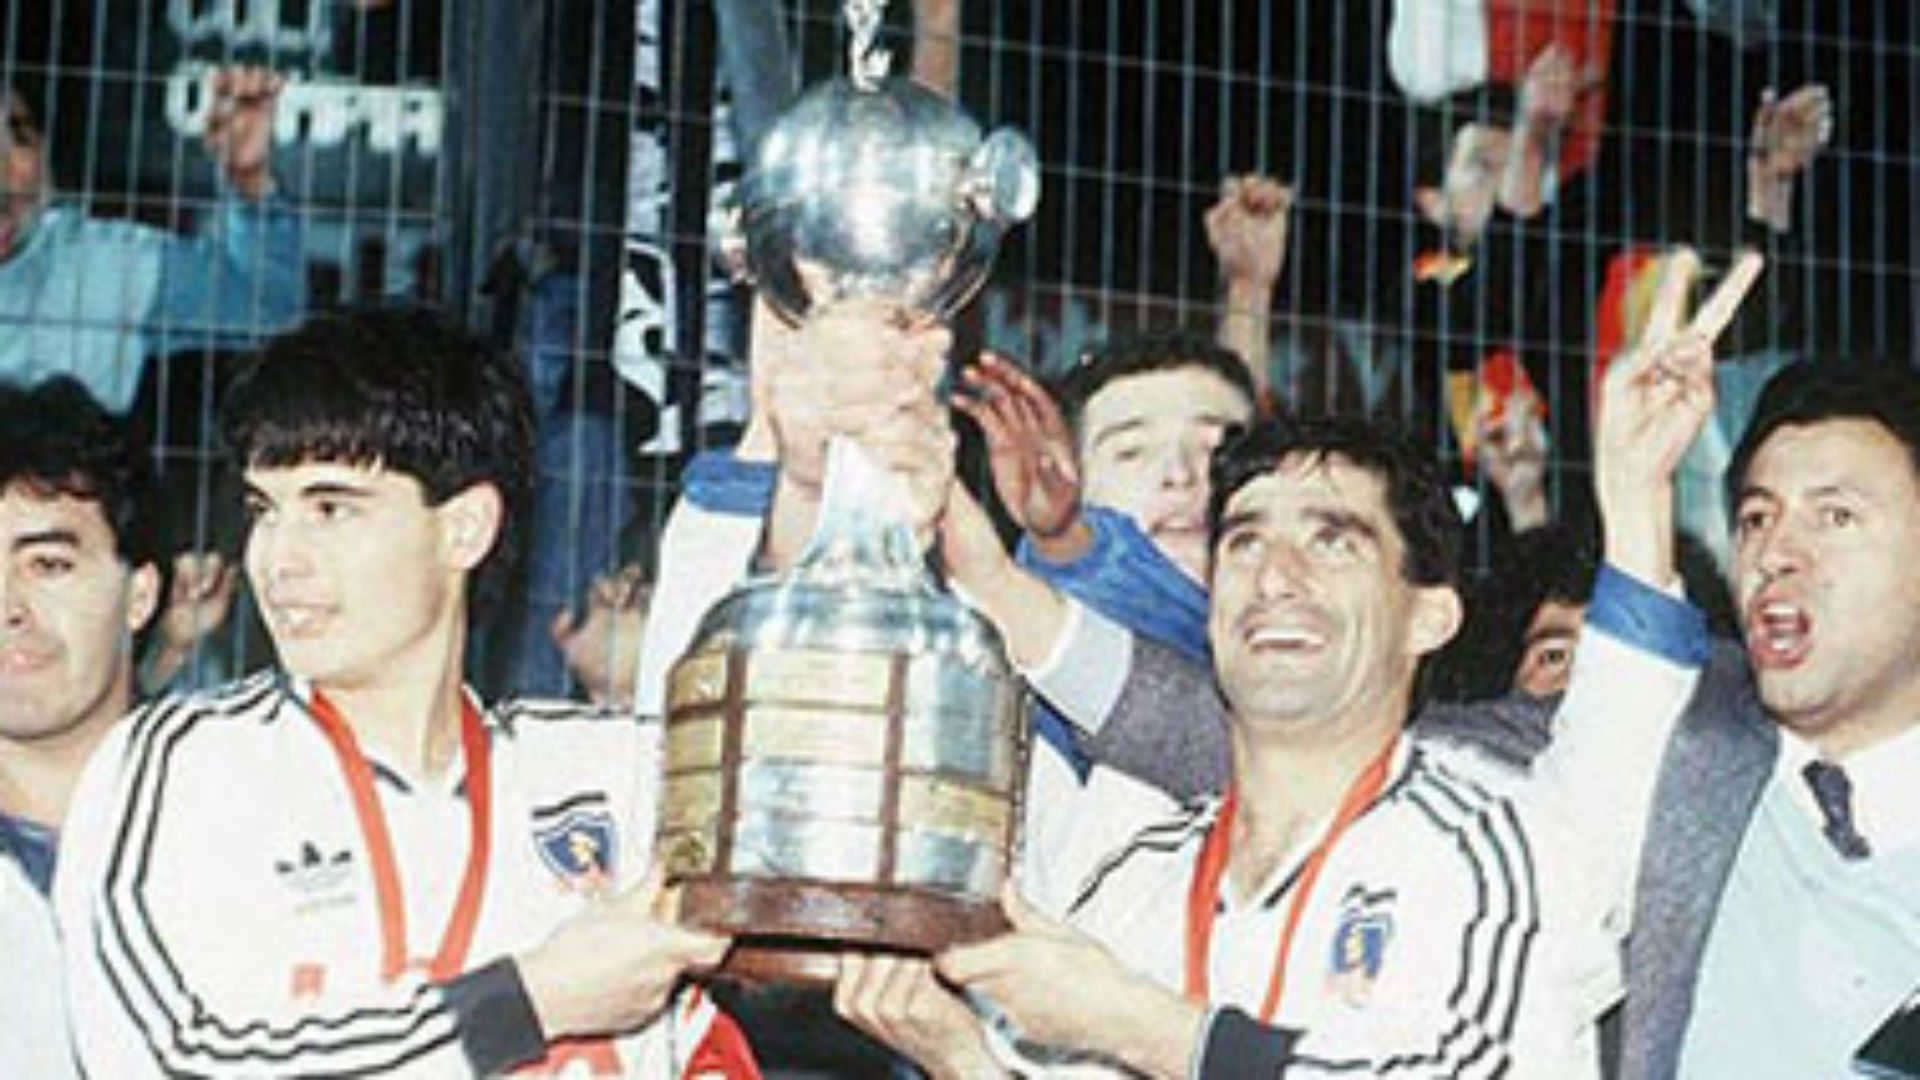 Colo Colo Campeon De La Copa Libertadores 1991 1plch2jgq0moq1mnhstsm1ct86